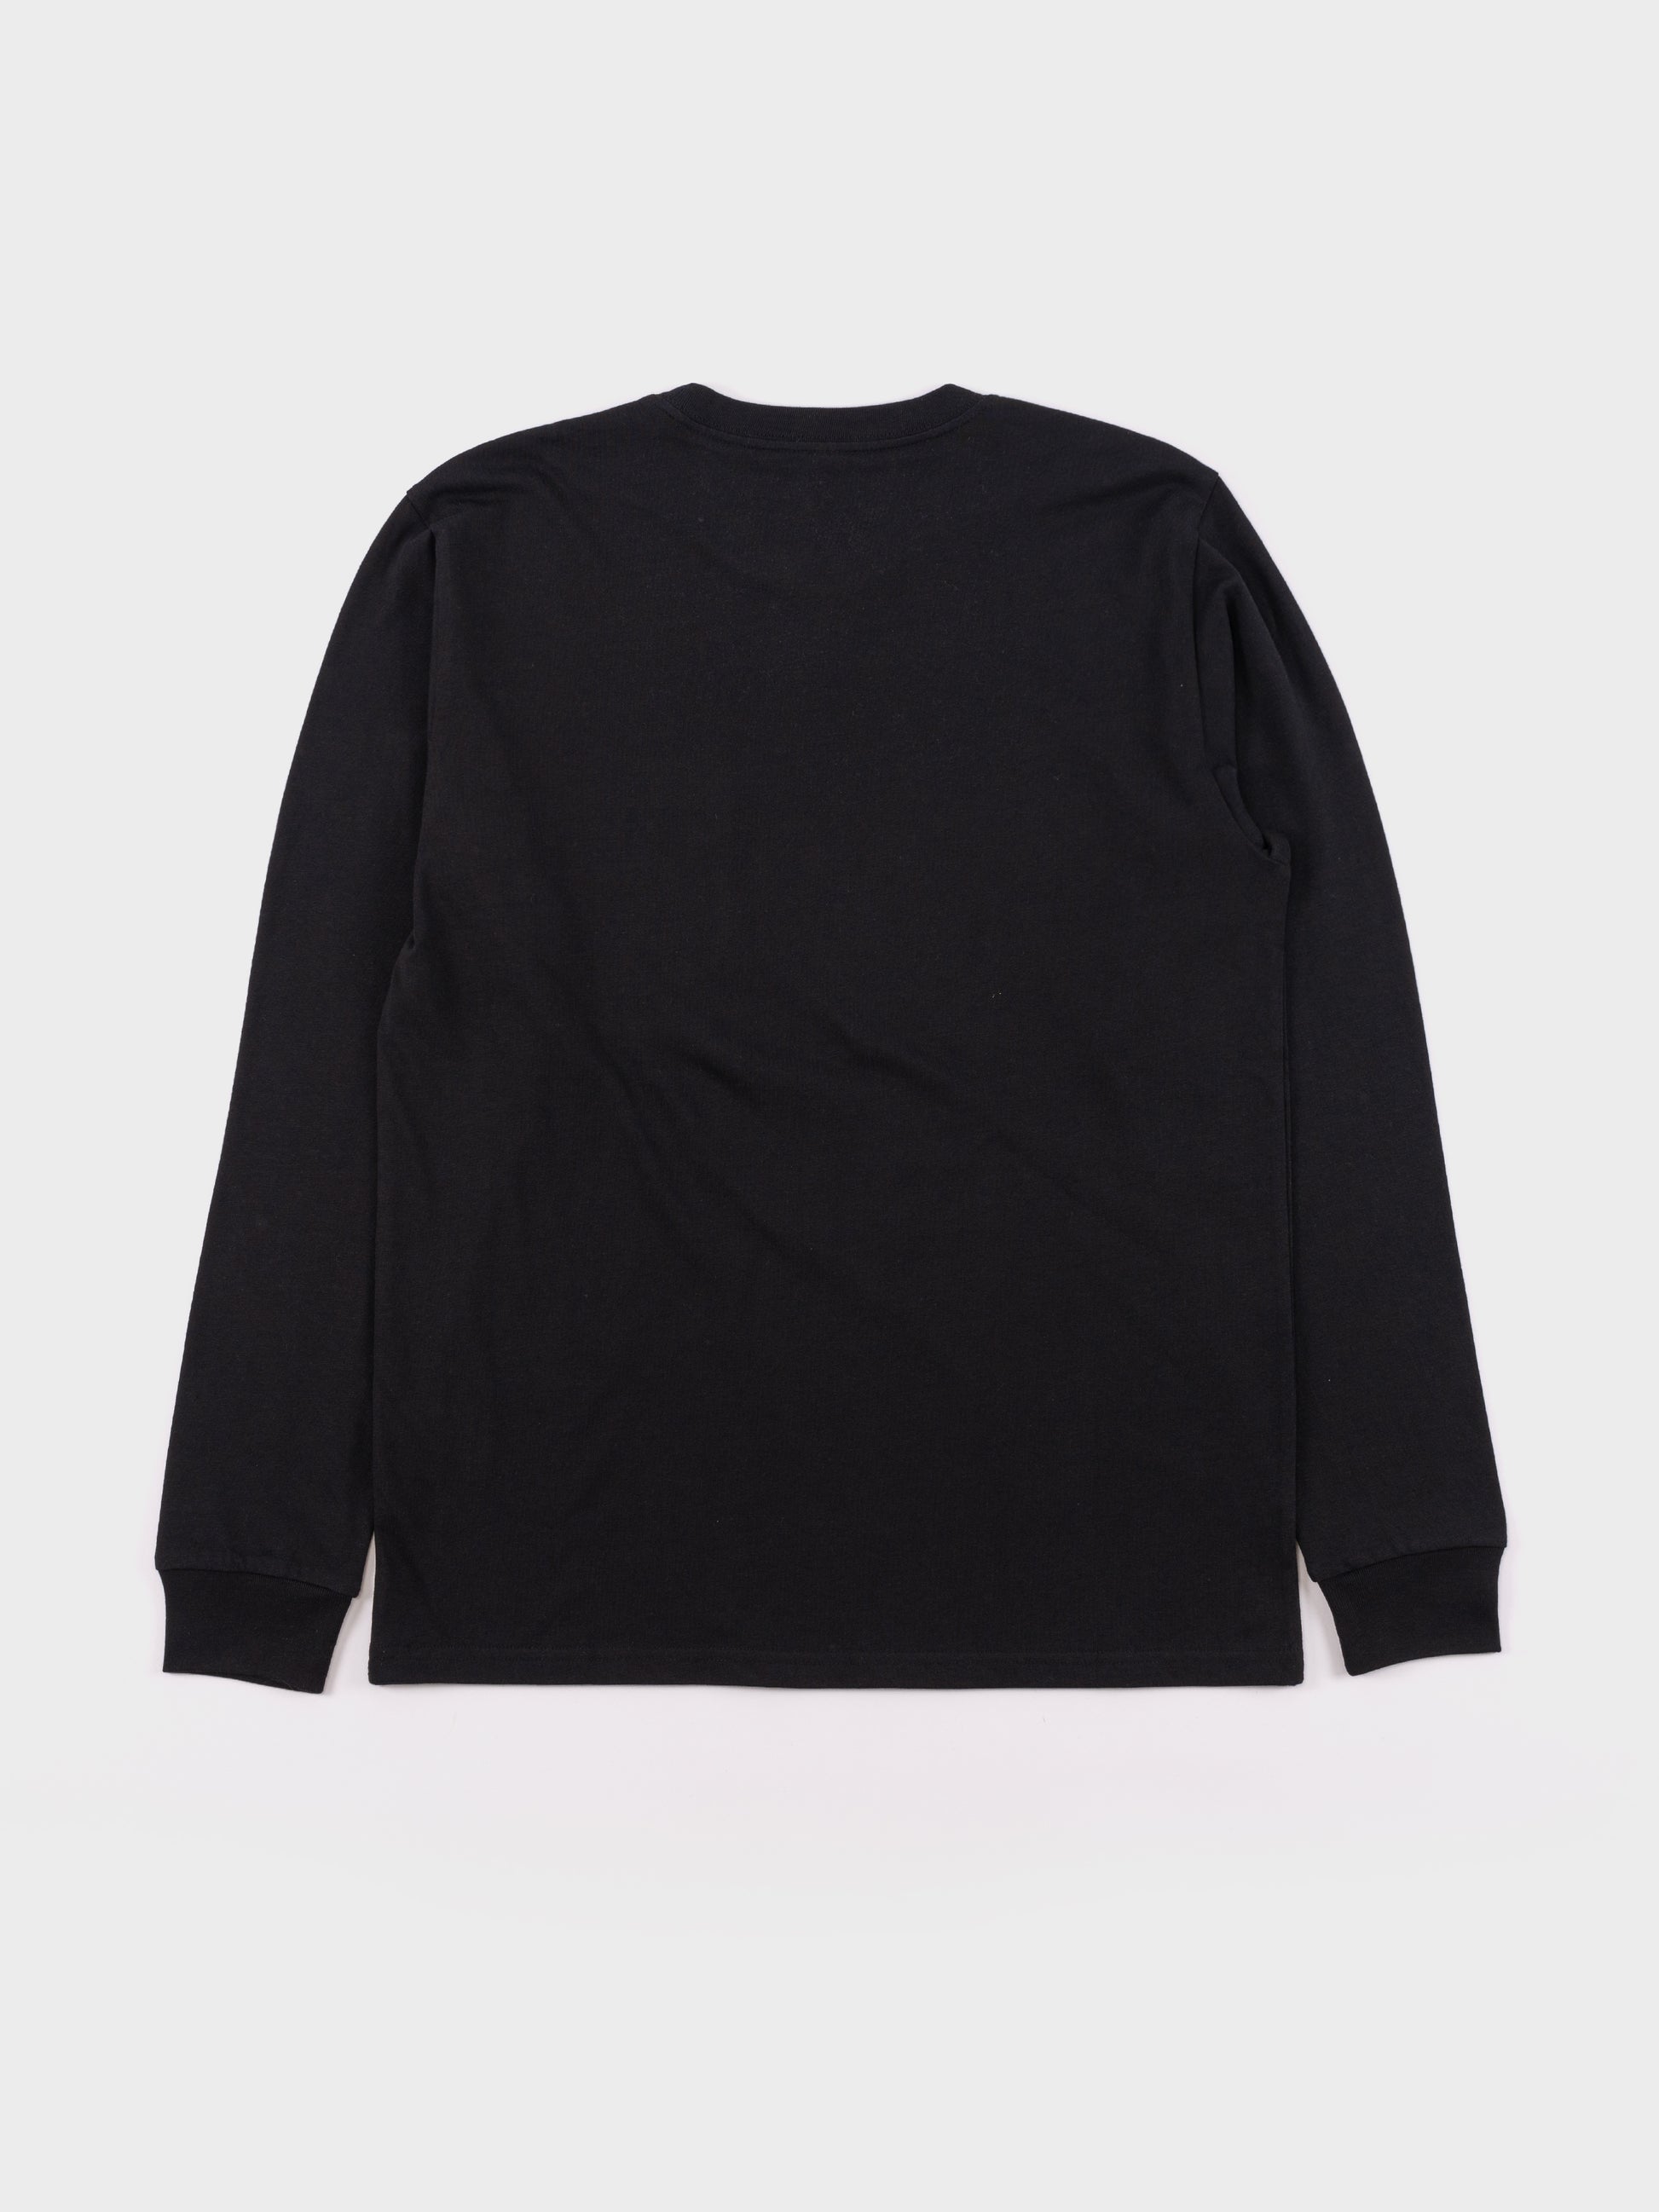 Carhartt L/S Pocket T Shirt - Black